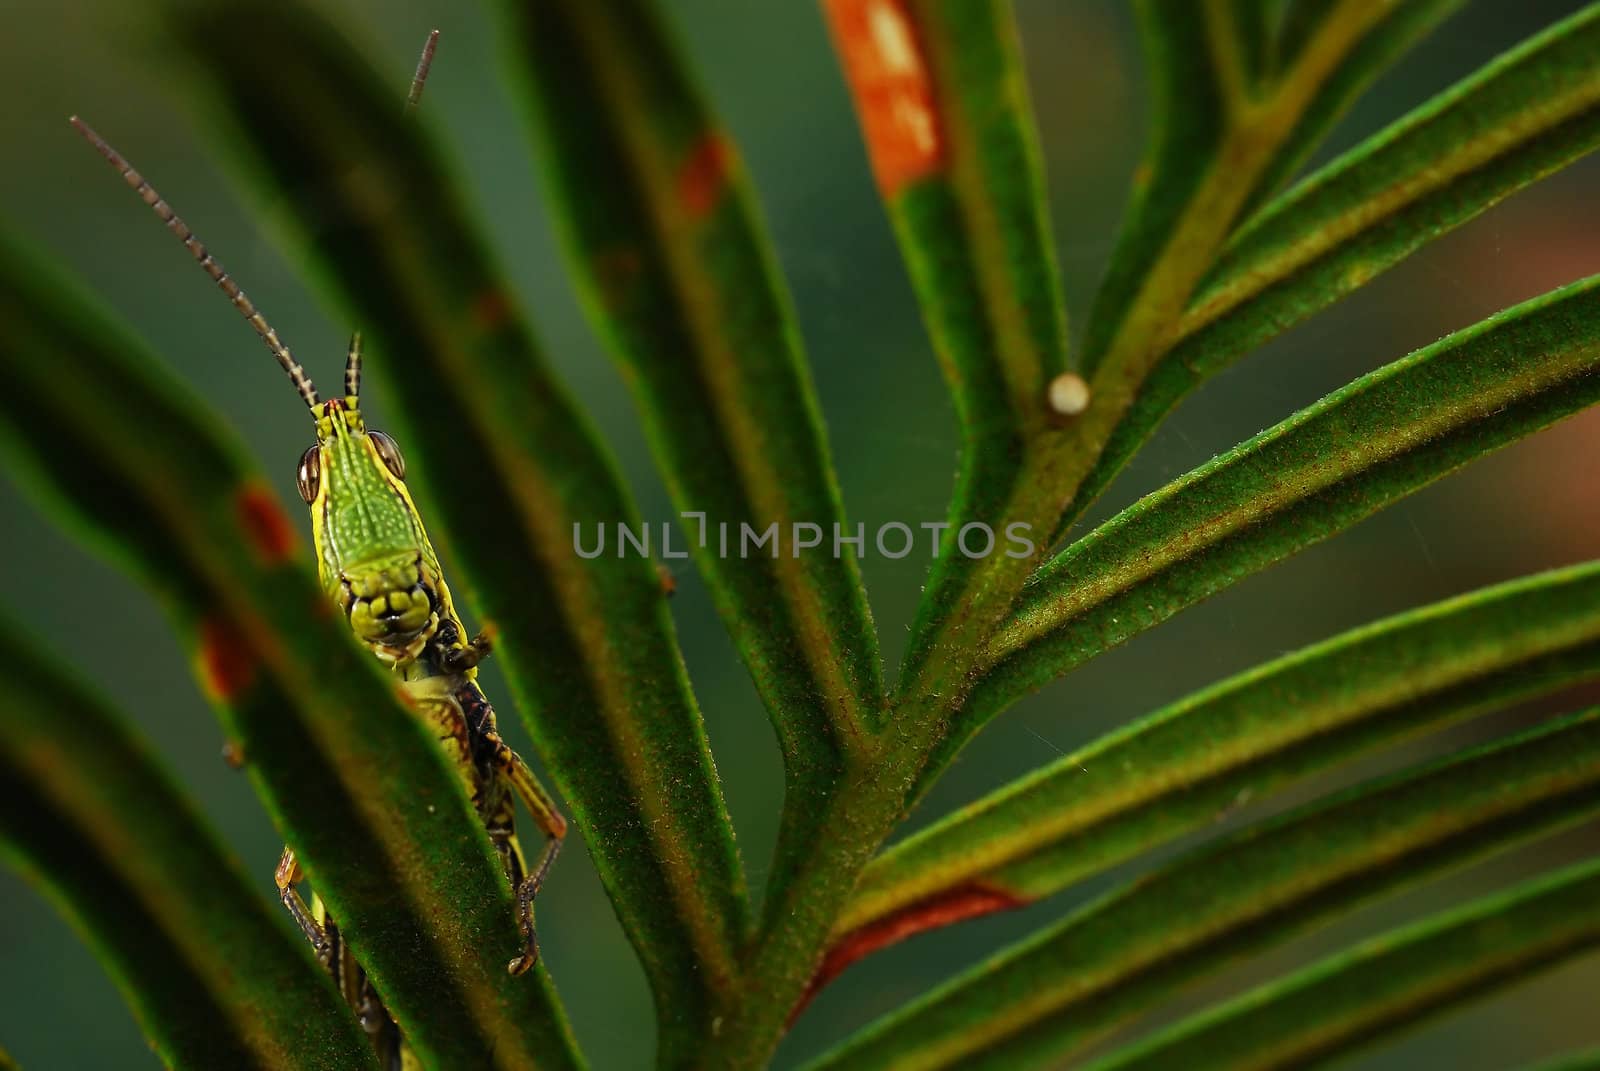 gasshopper behind leaf by porbital